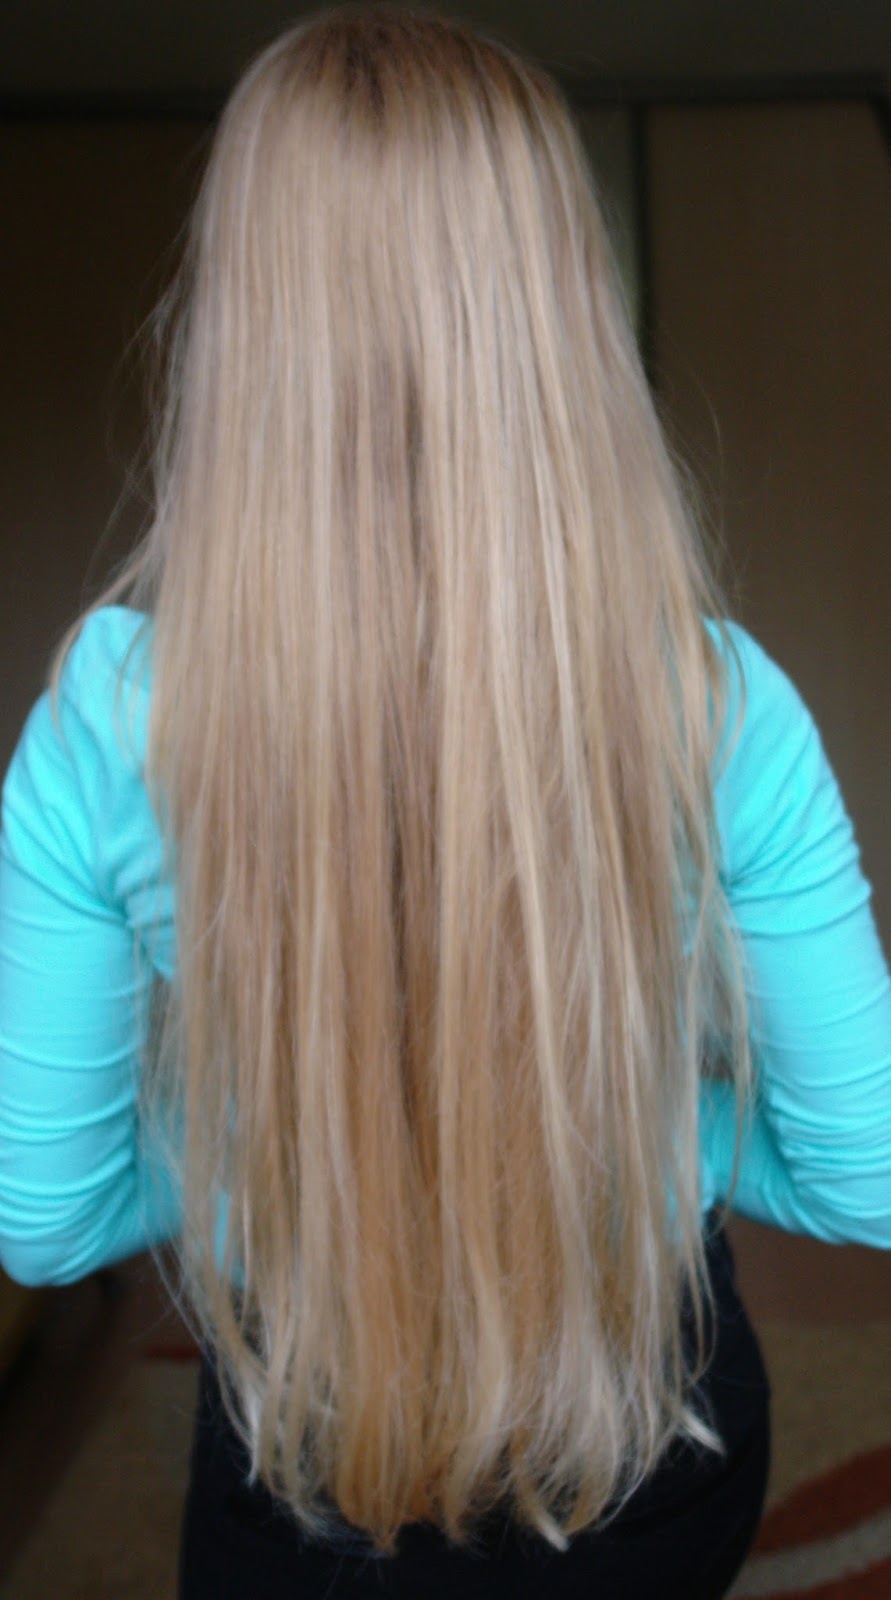 szampon koloryzujacy blond efekty